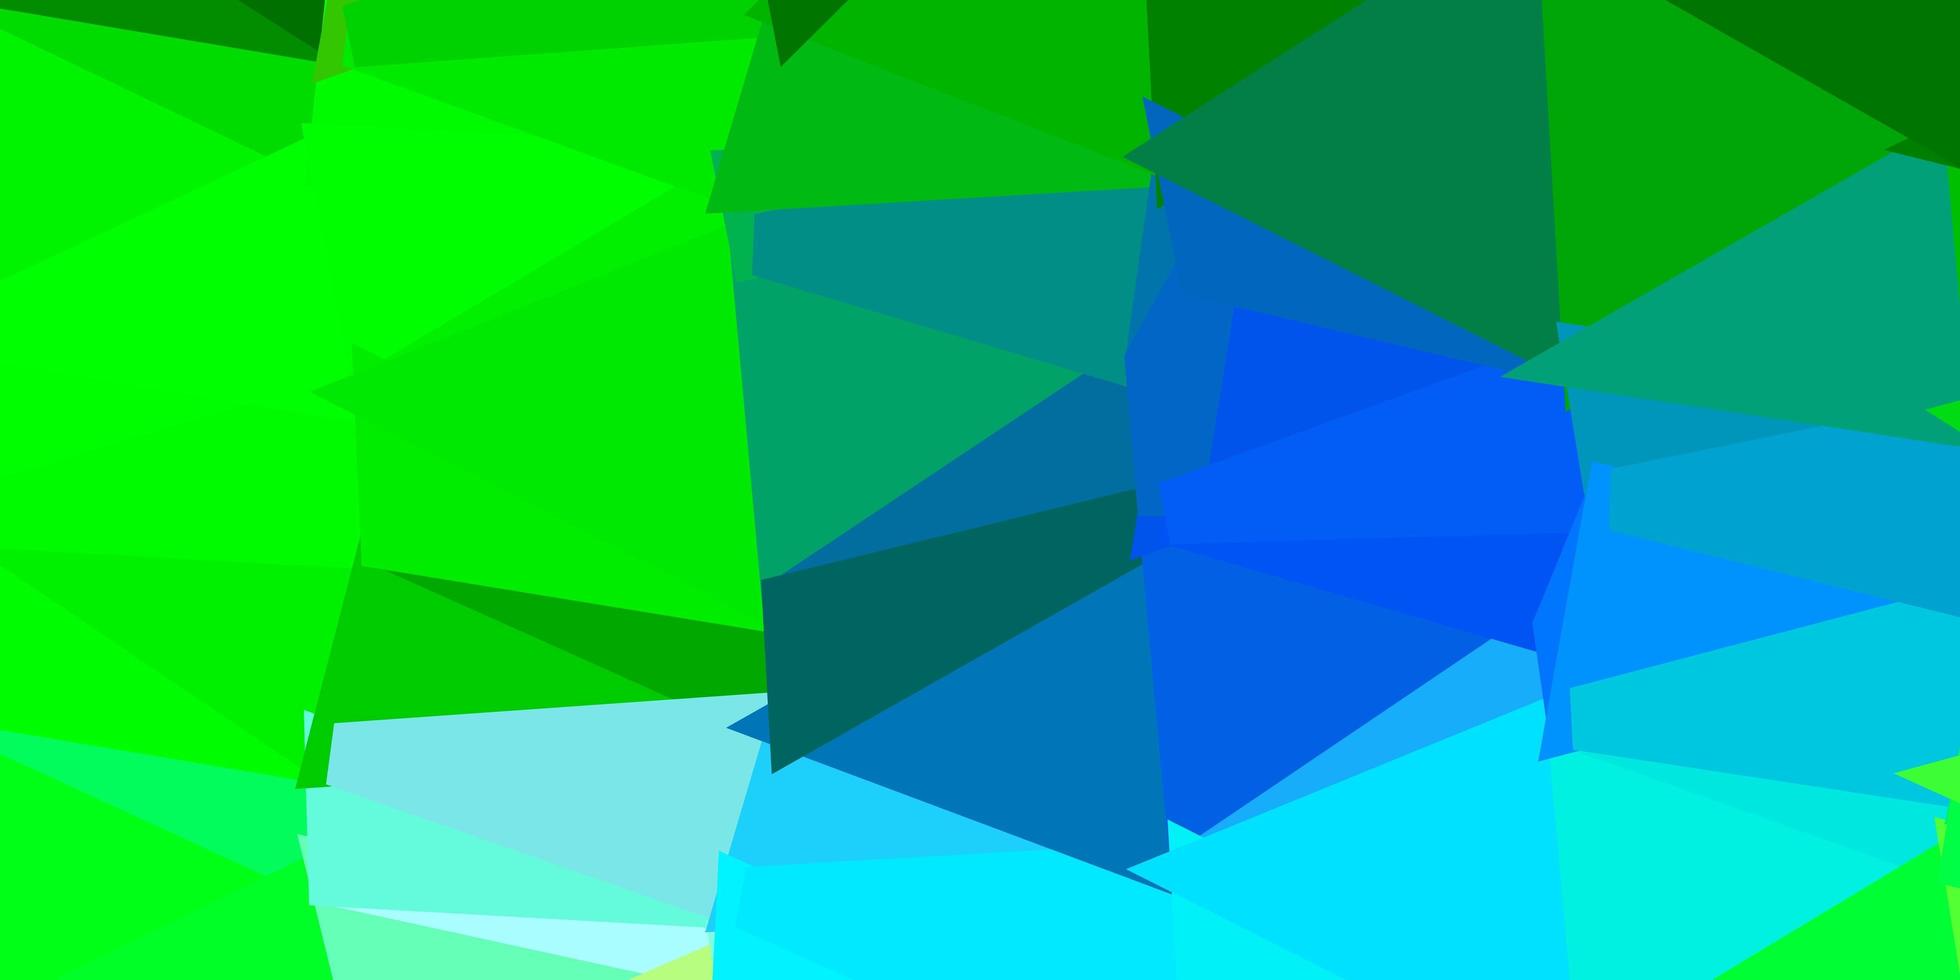 projeto do mosaico do triângulo do vetor azul claro e verde.